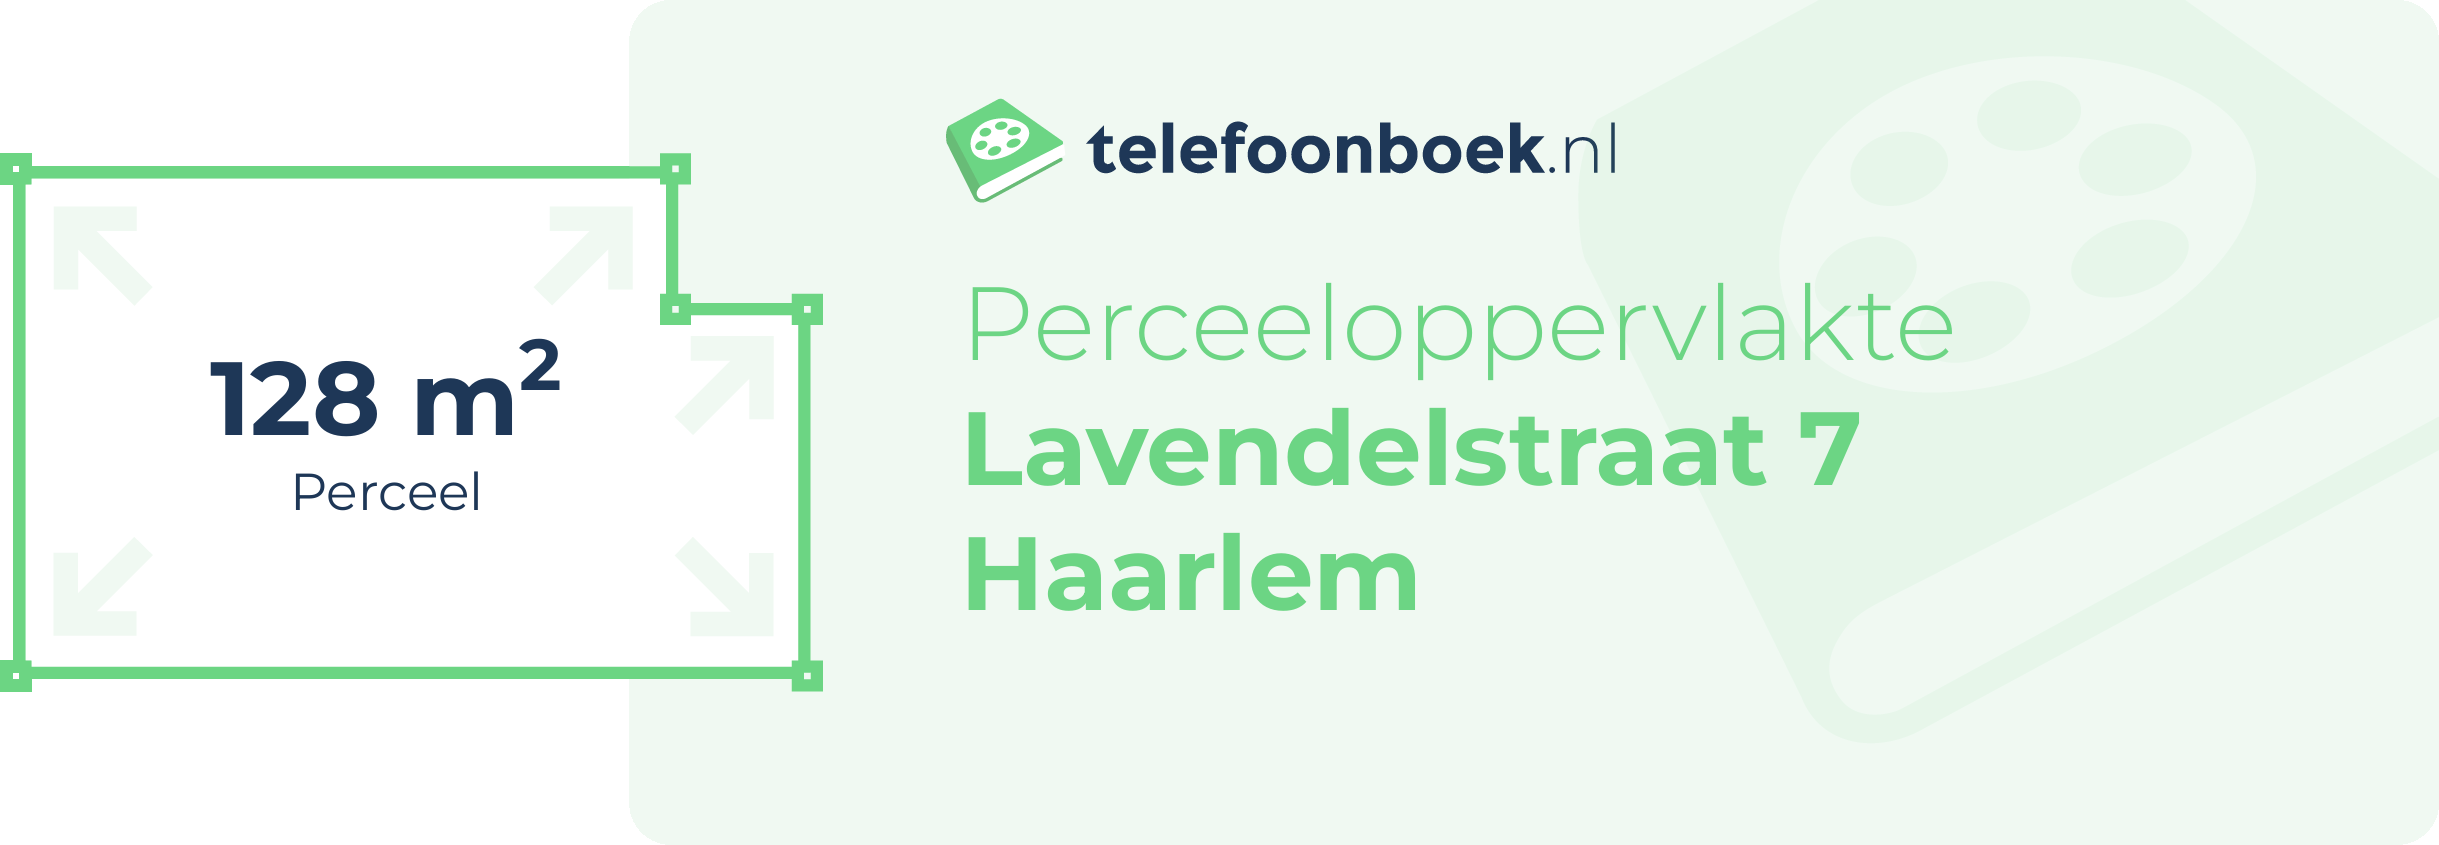 Perceeloppervlakte Lavendelstraat 7 Haarlem